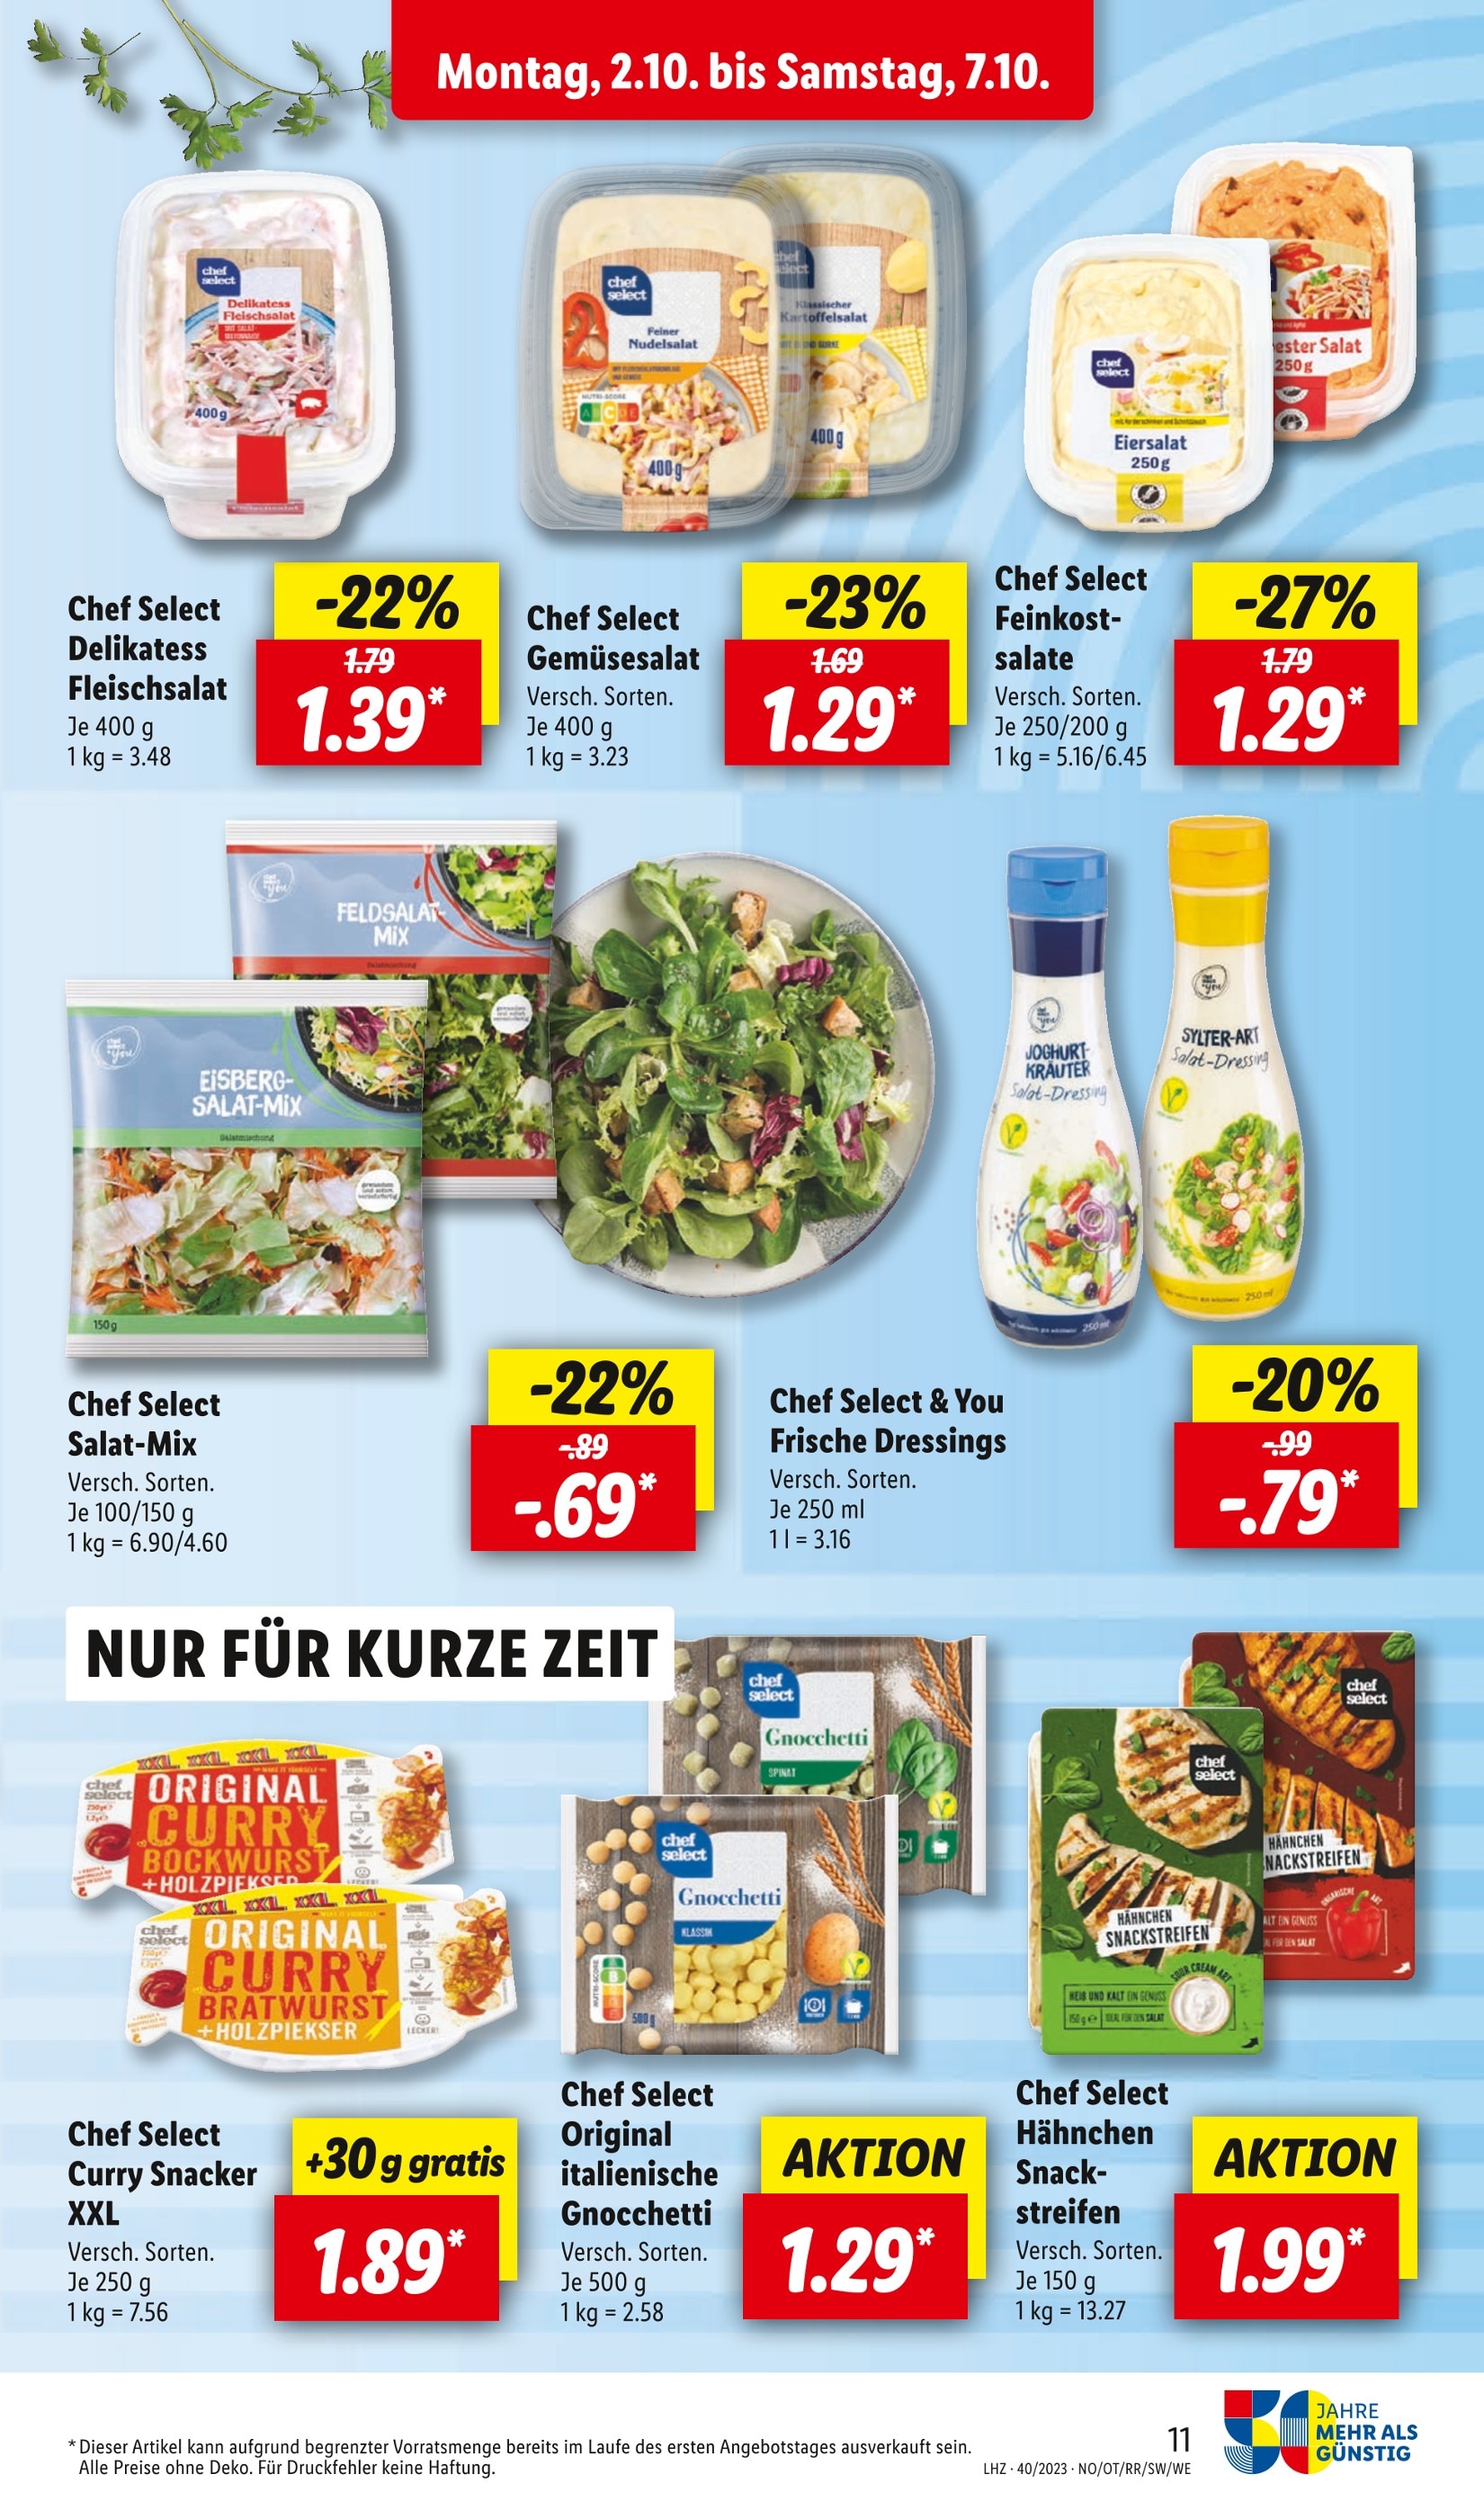 - Angebote Kartoffelsalat in Heidelberg günstige Heidelberg in kaufen